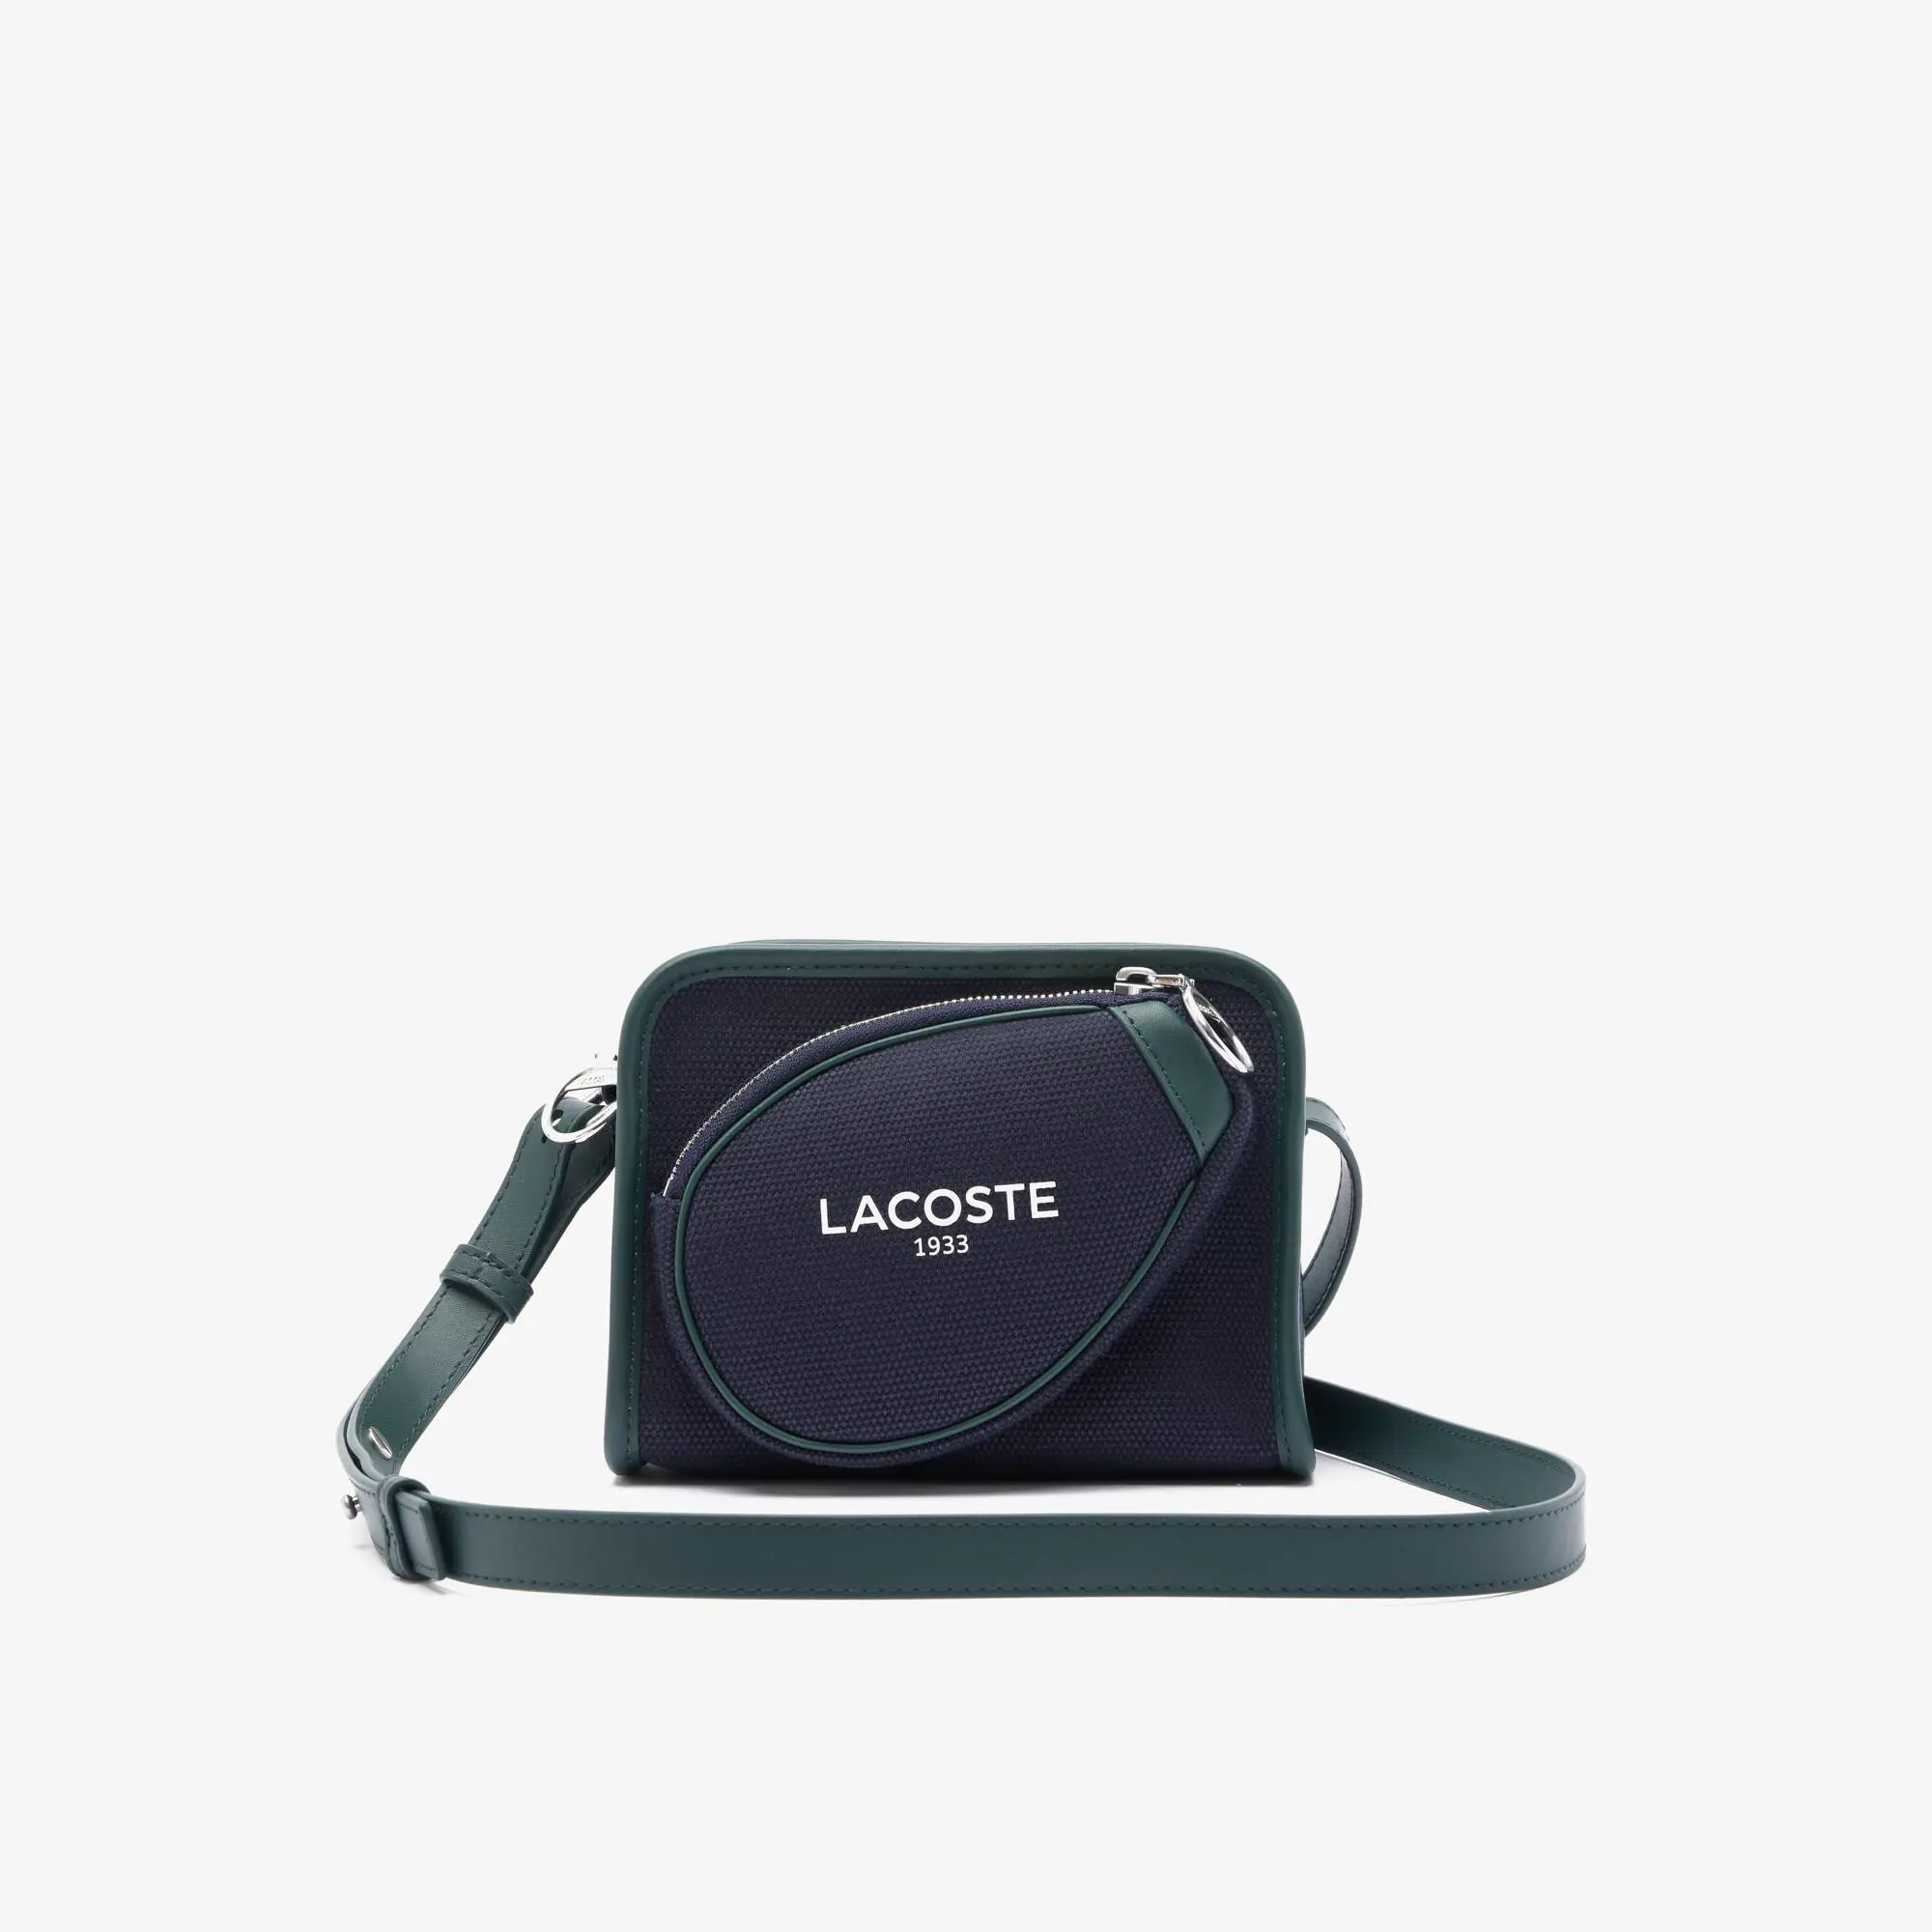 Lacoste Women's Tennis Style Textile Shoulder Bag. 1